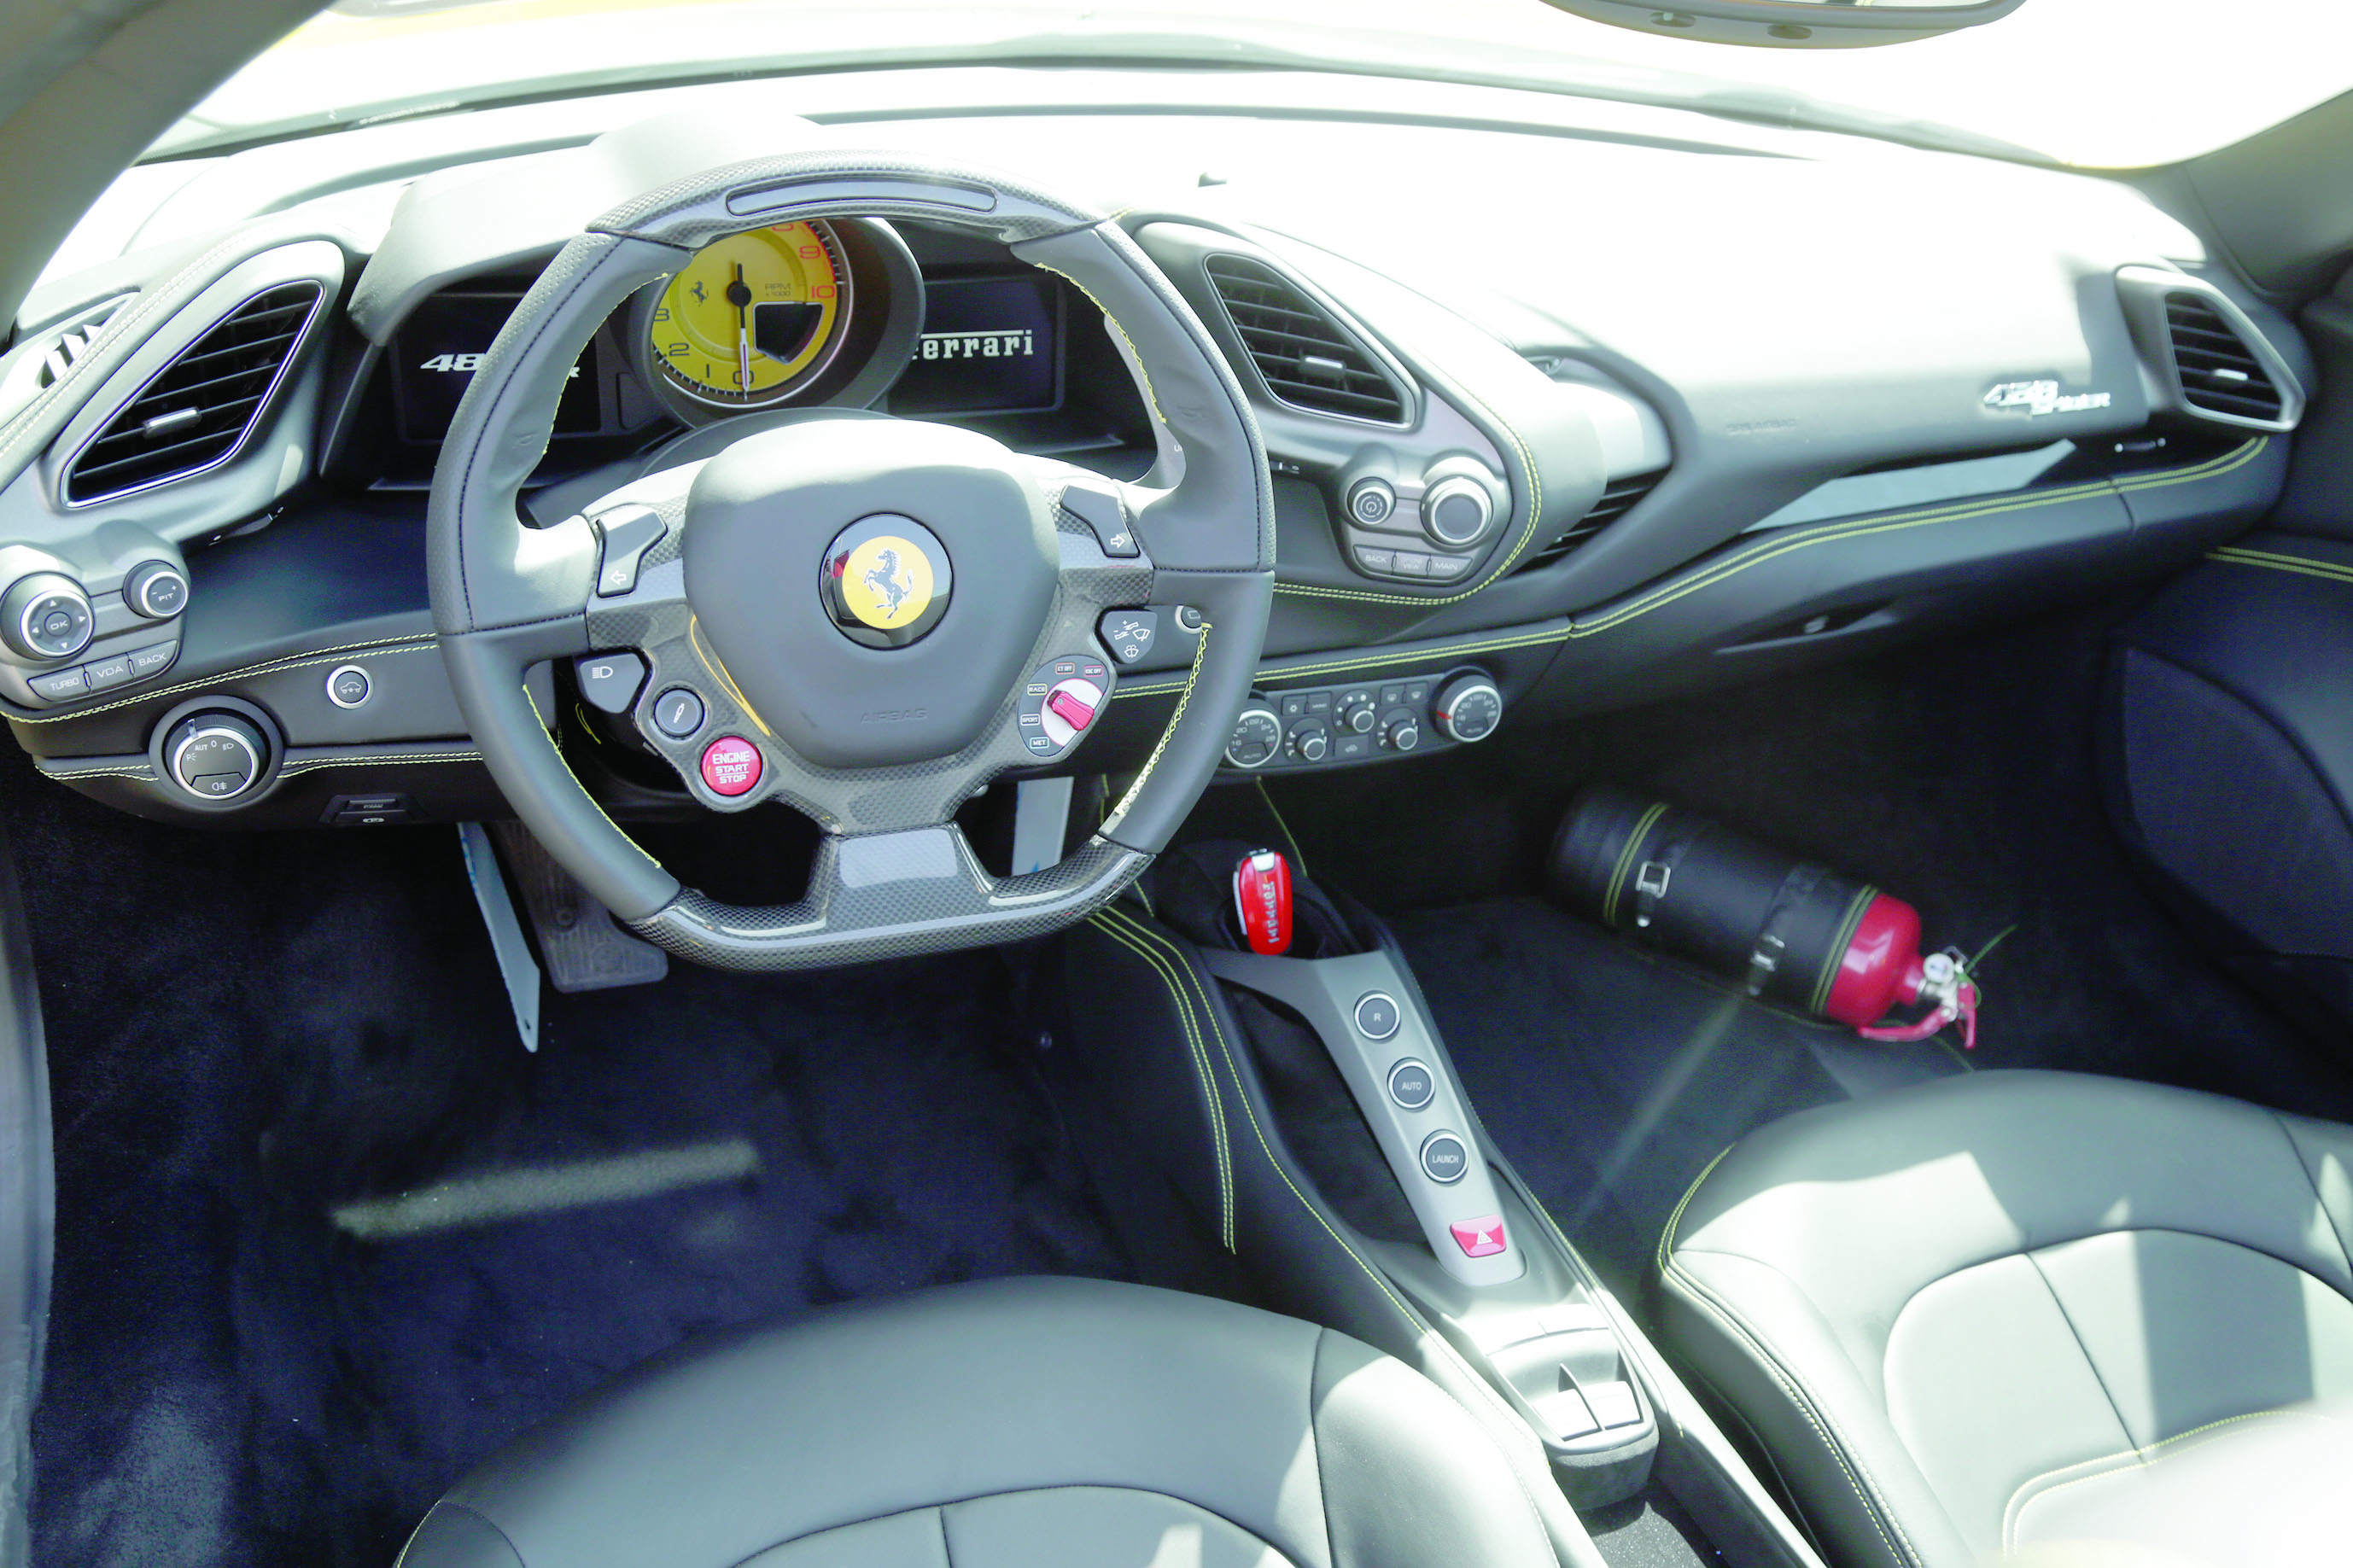 الفردان للسيارات تستضيف فعالية "إسبريانزا فيراري" وتتيح تجربة قيادة GTC4Lusso و 488 Spider